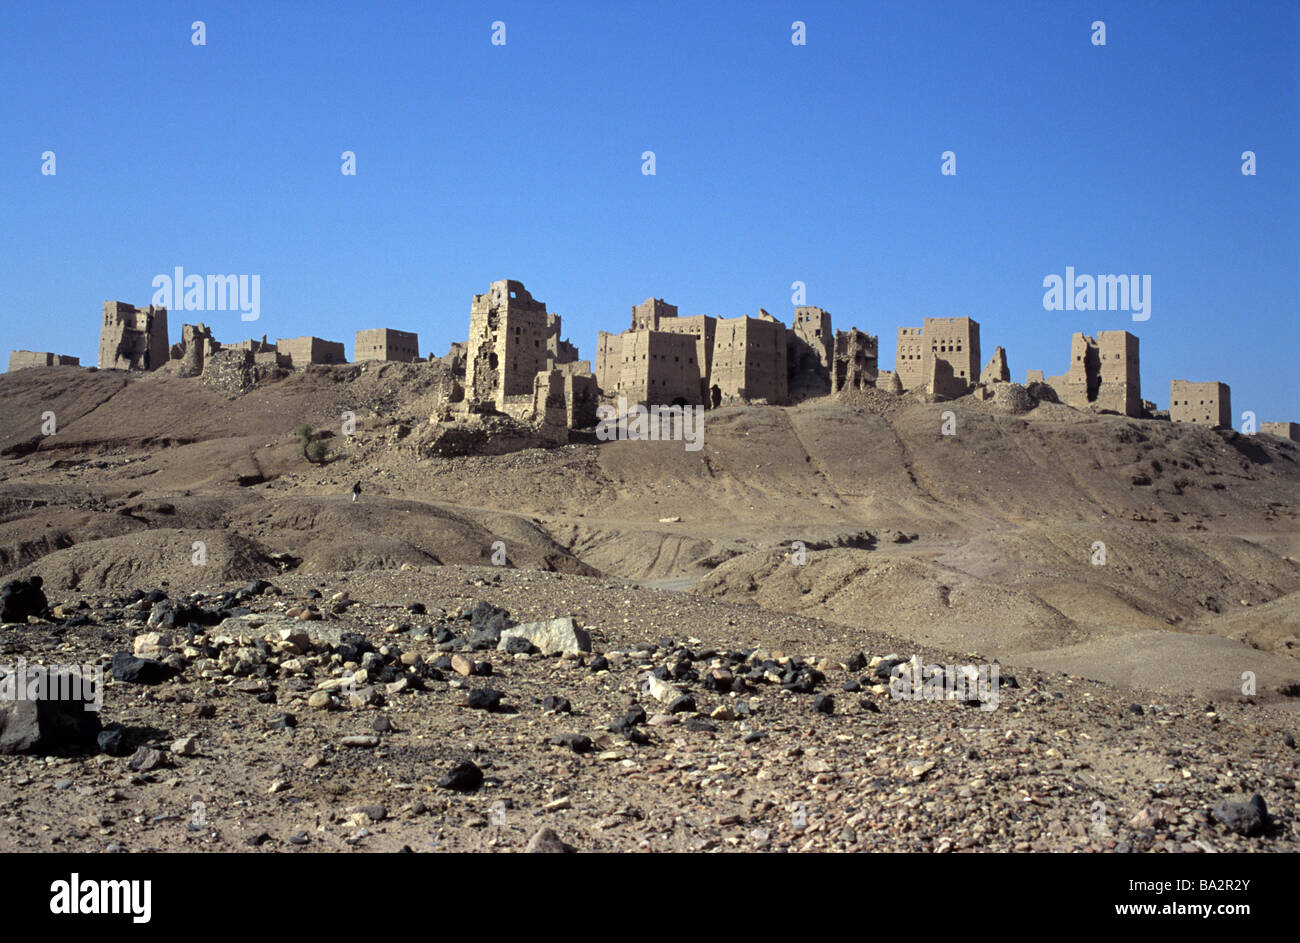 Ruins of Ancient Town of Marib, Yemen Stock Photo